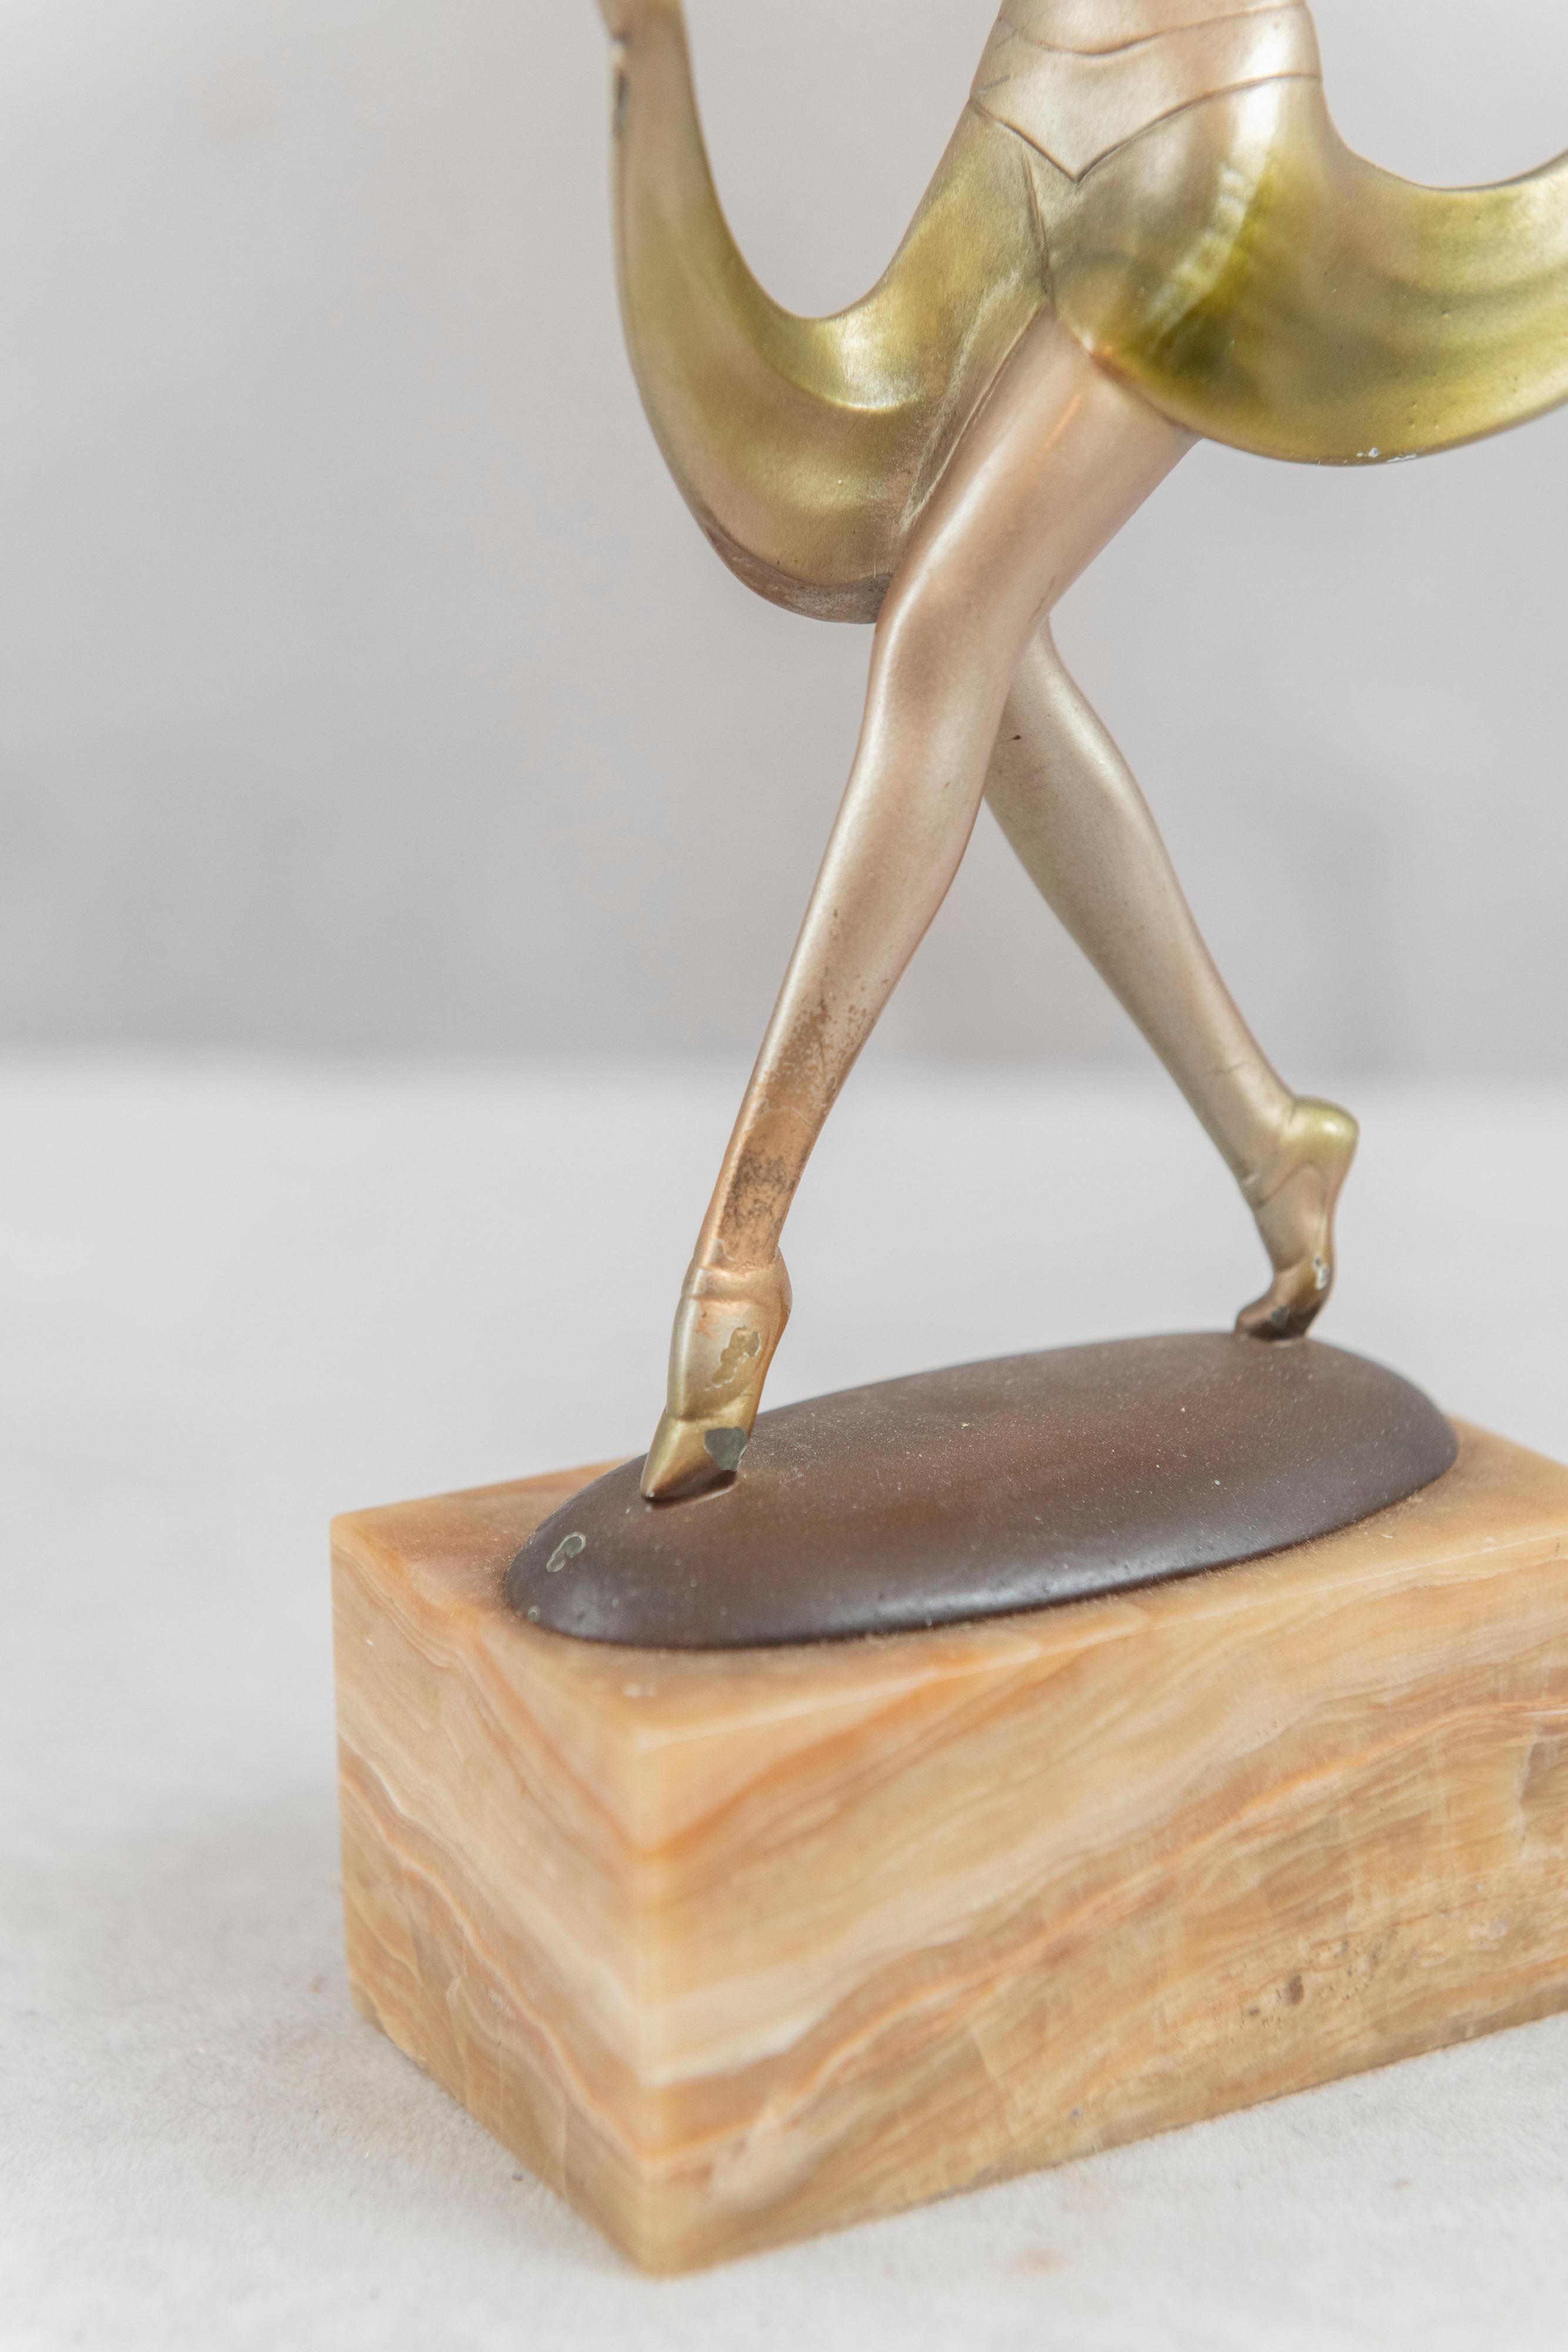 Cette gracieuse danseuse en bronze a été réalisée par le sculpteur autrichien Josef Lorenzl, qui jouit d'une grande renommée. Un grand nombre de ses autres œuvres sont présentées dans le livre 